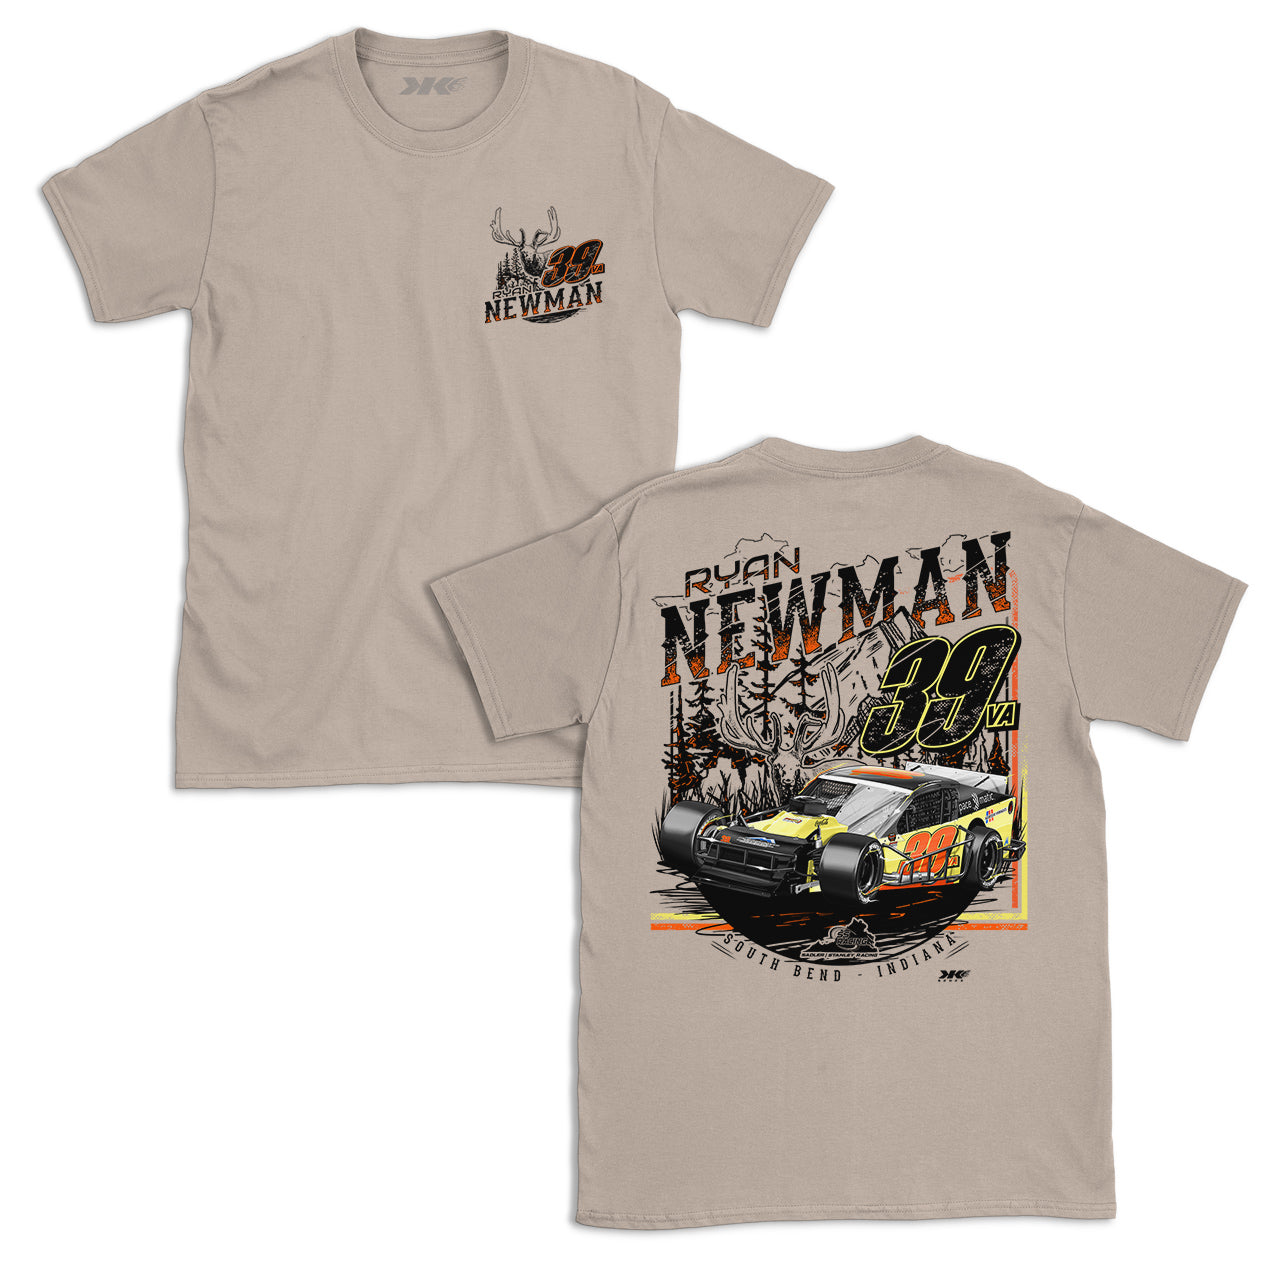 Ryan Newman Outdoor Buddy T-Shirt - Sand